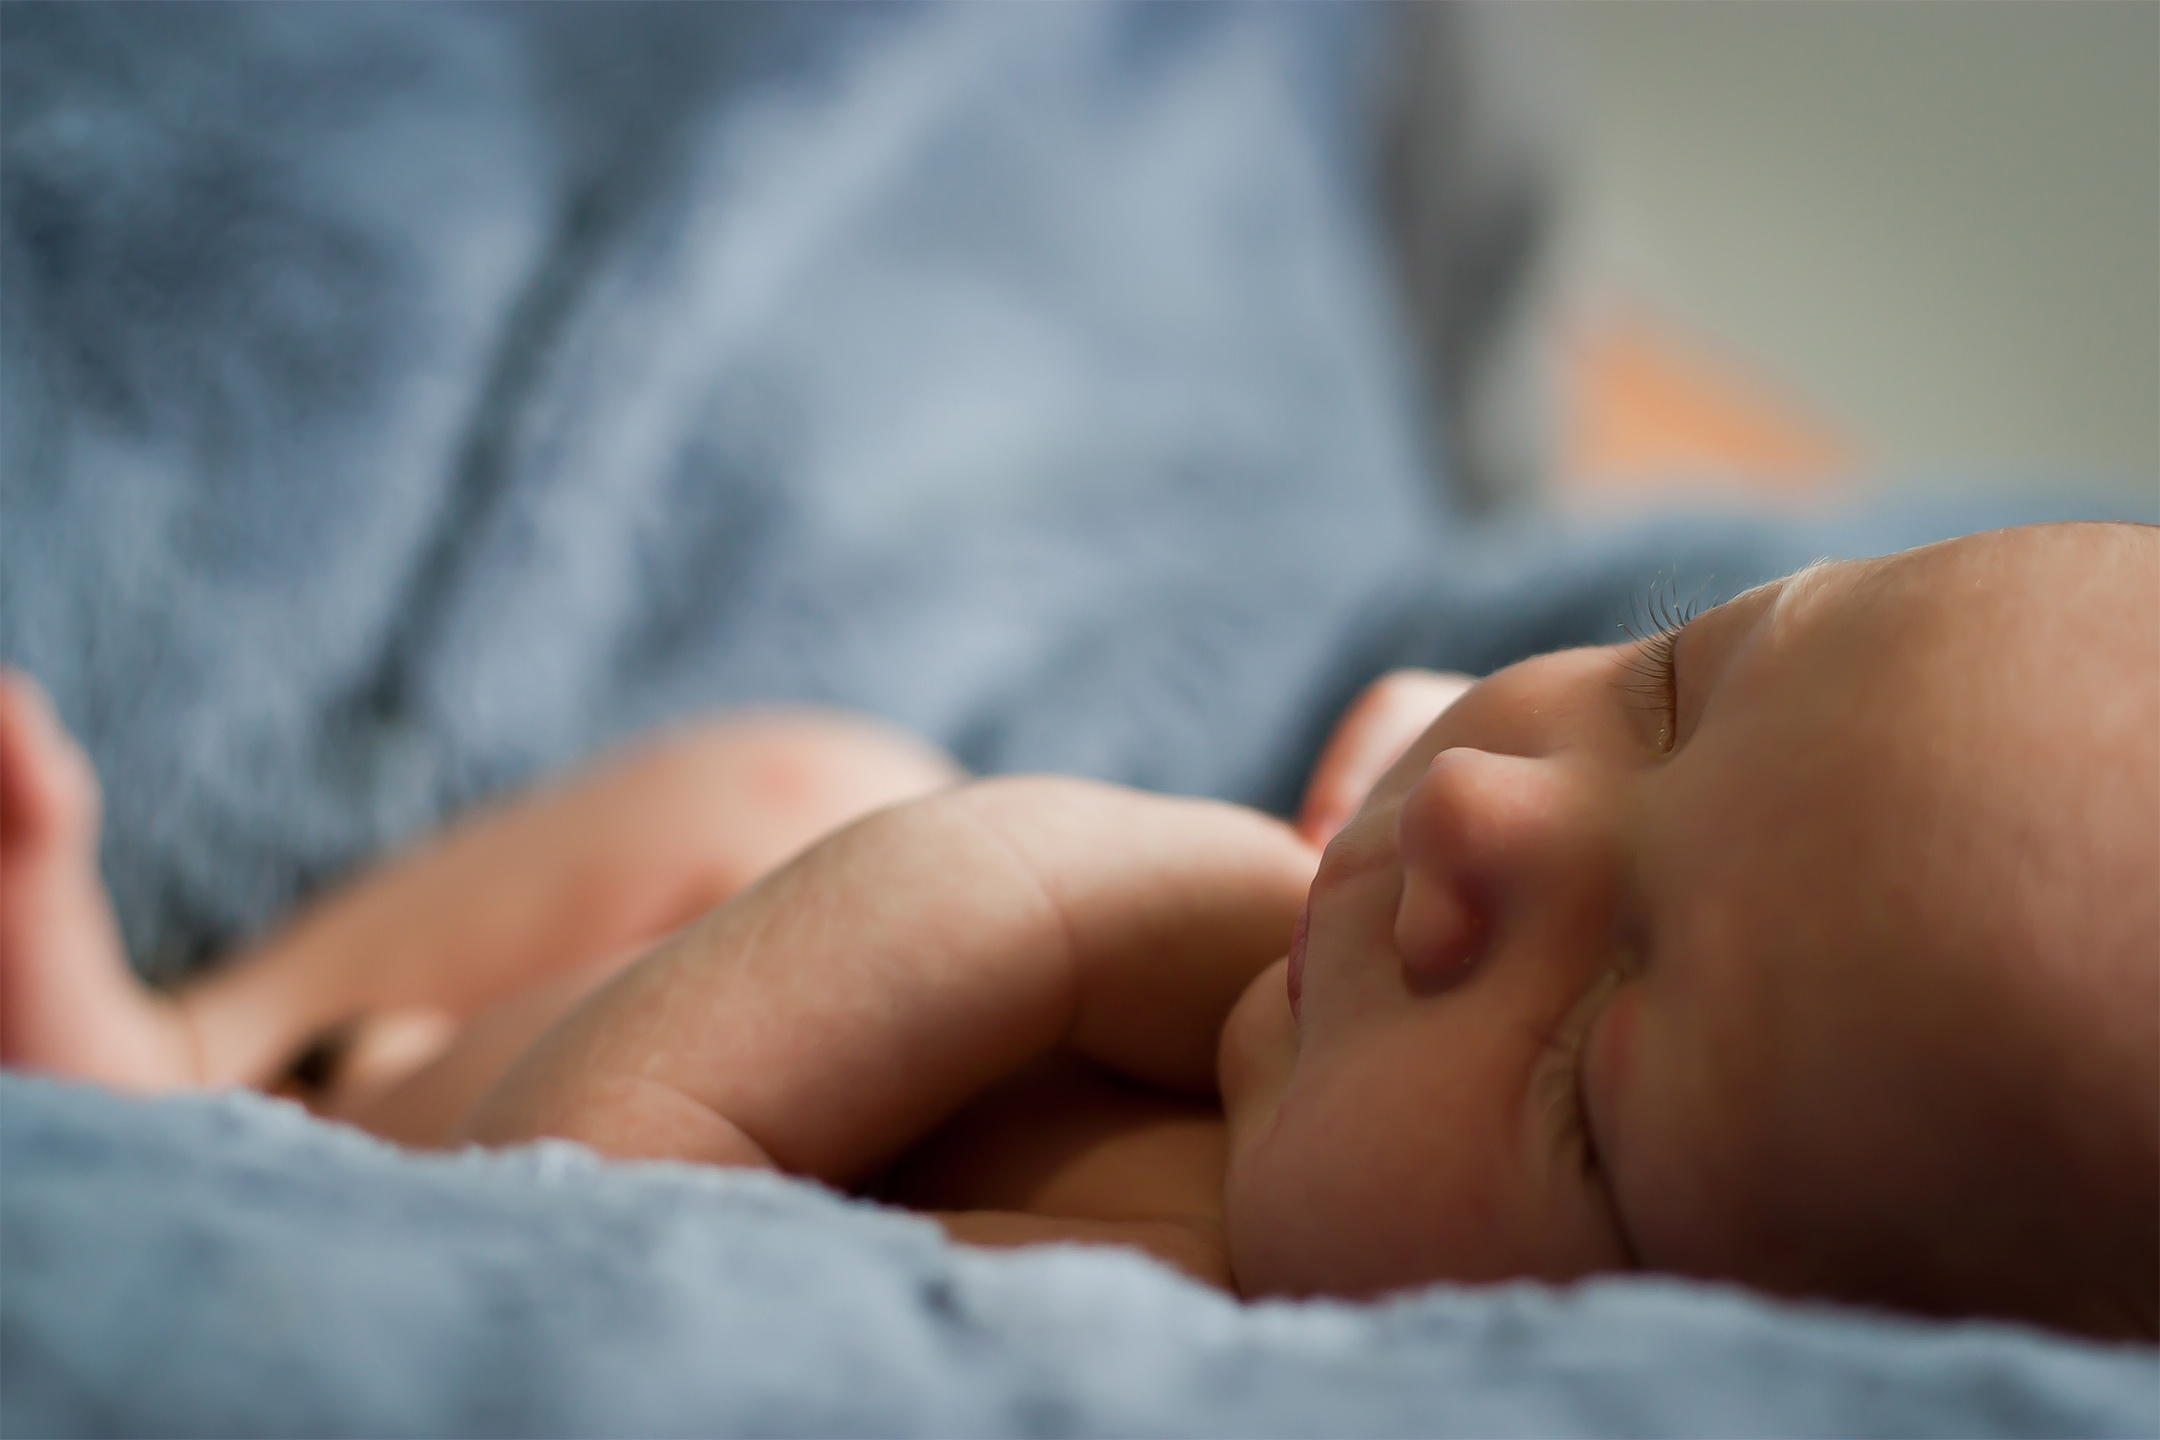 newborn-baby-painrelief-childbirth2160